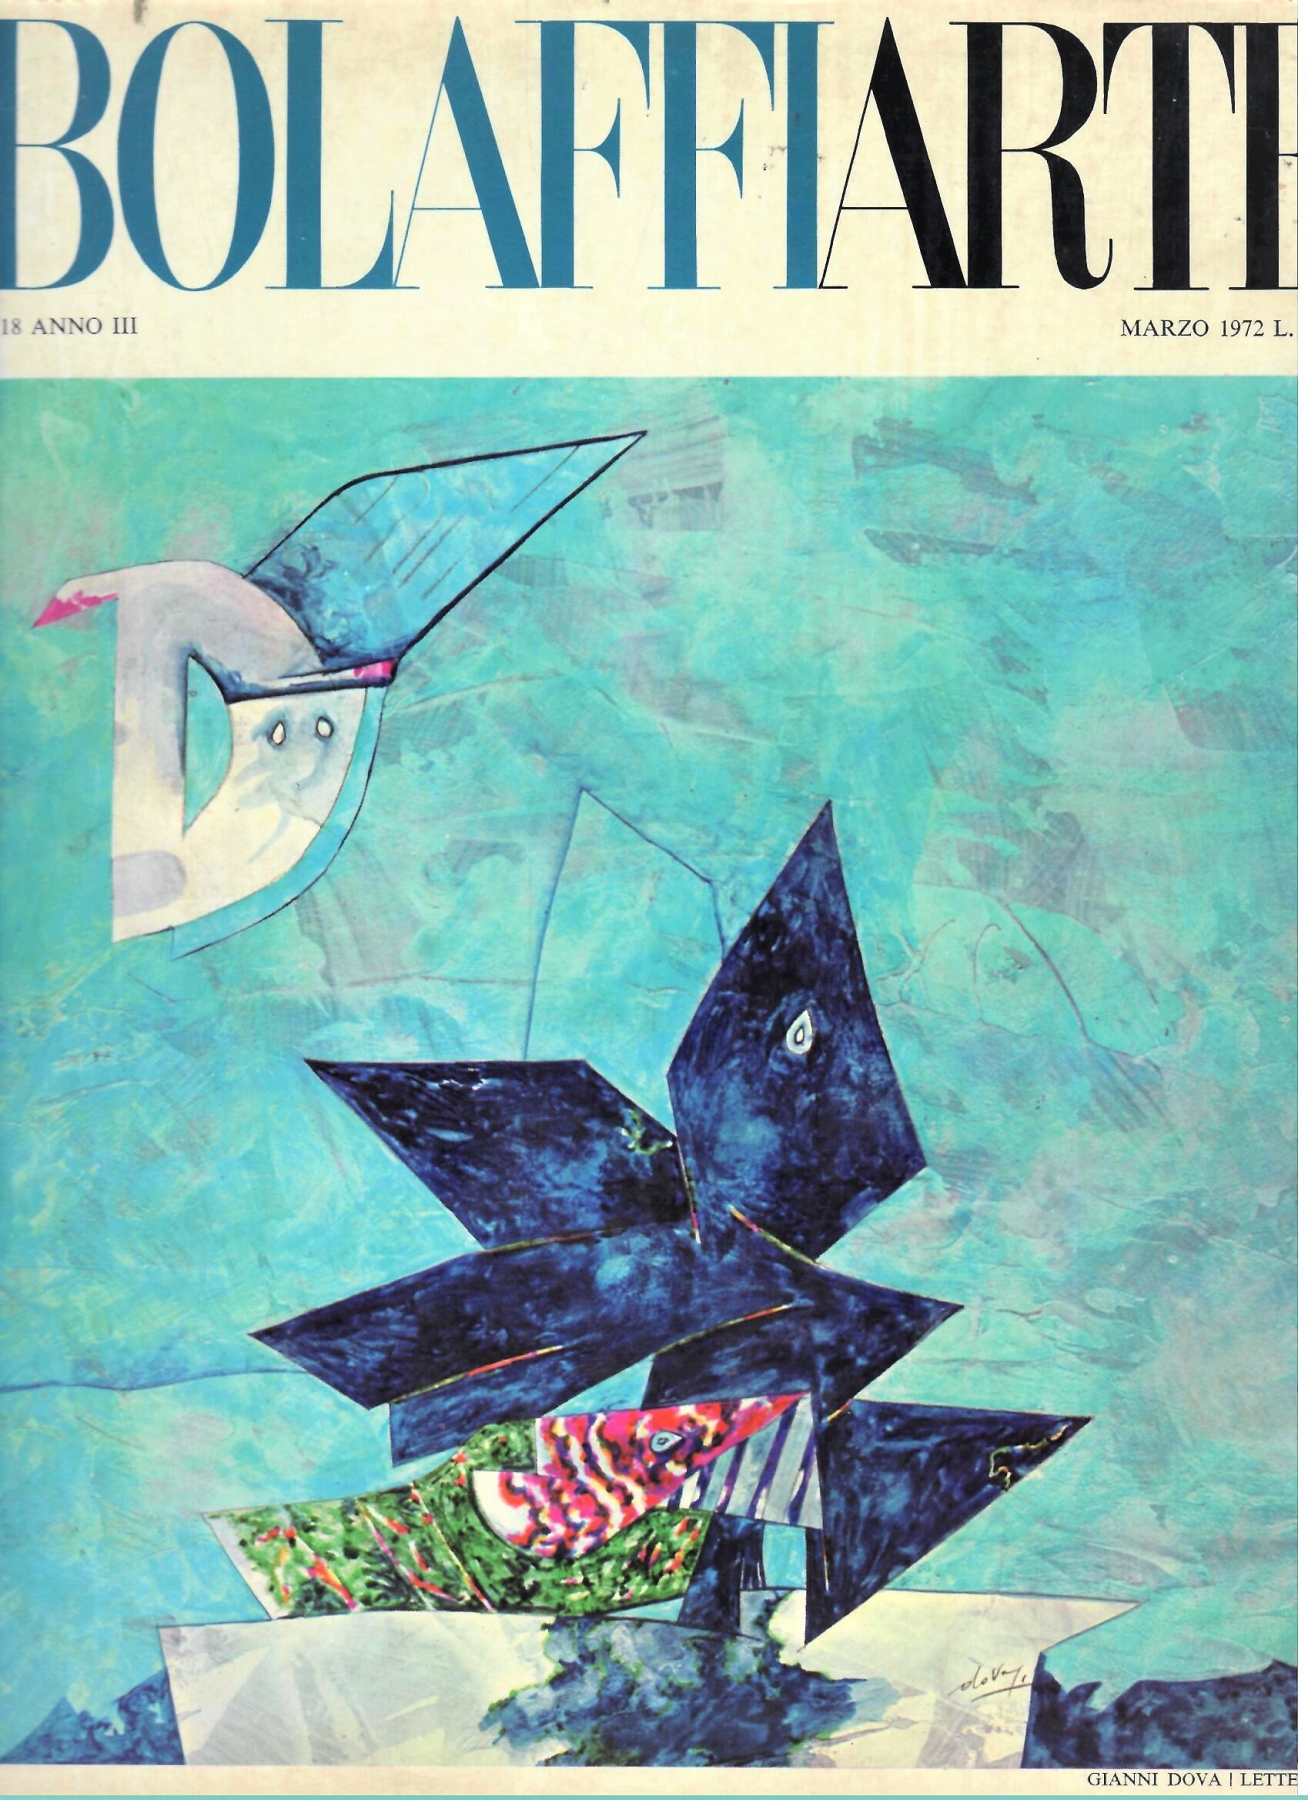 Catalogo BOLAFFI ARTE n. 18, Anno III, Marzo 1972, pubblicazione del dipinto A. Bertrand, 'Forme libere nello spazio, olio su tela, 40x50, Collez. M. Rasizzi, New York, pag. 16